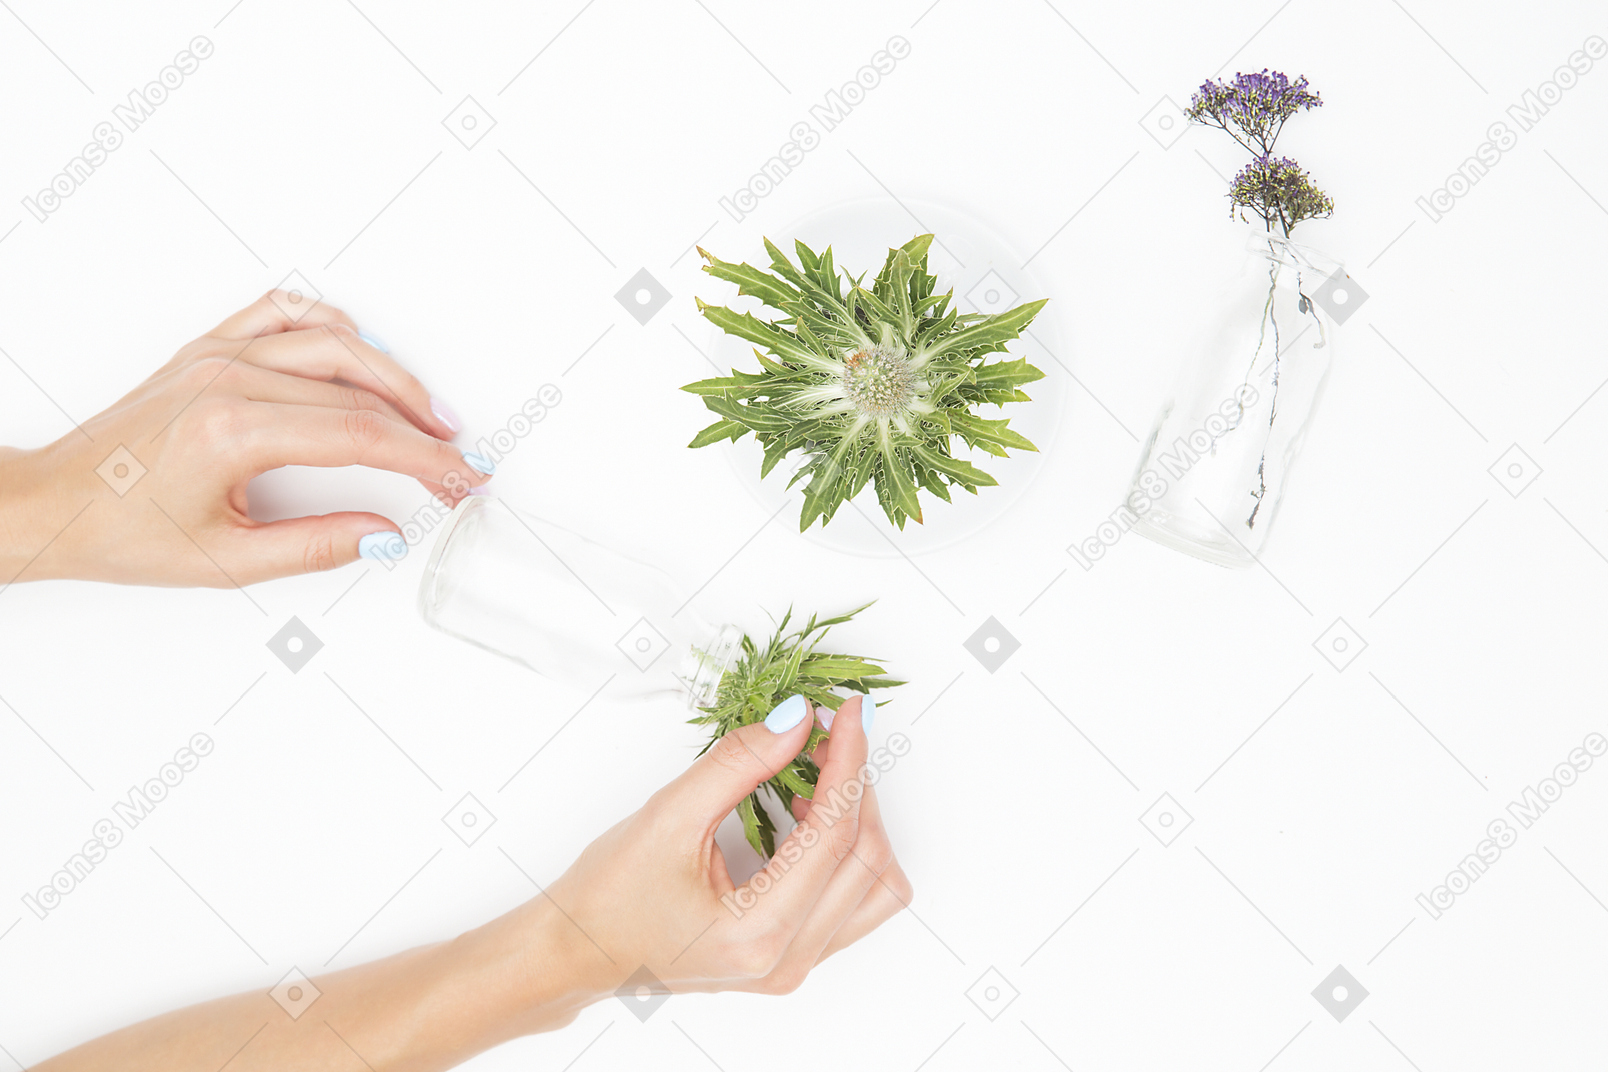 女手旁边不同的玻璃物体和绿色植物